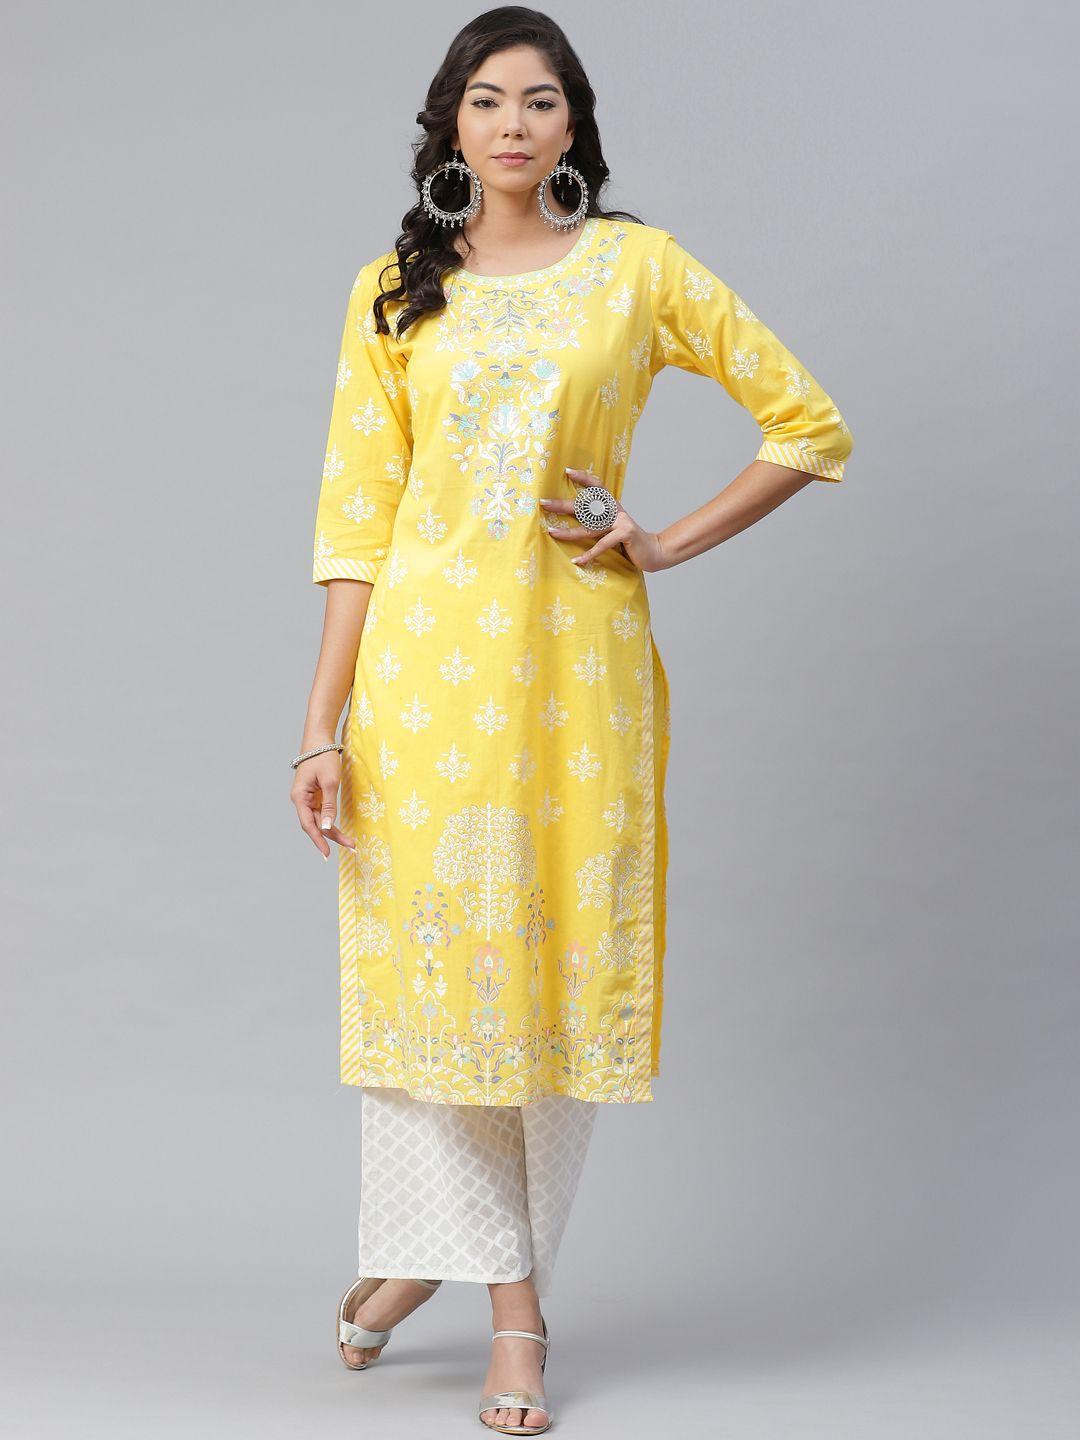 anubhutee women yellow & green pure cotton ethnic motifs printed kurta with palazzos